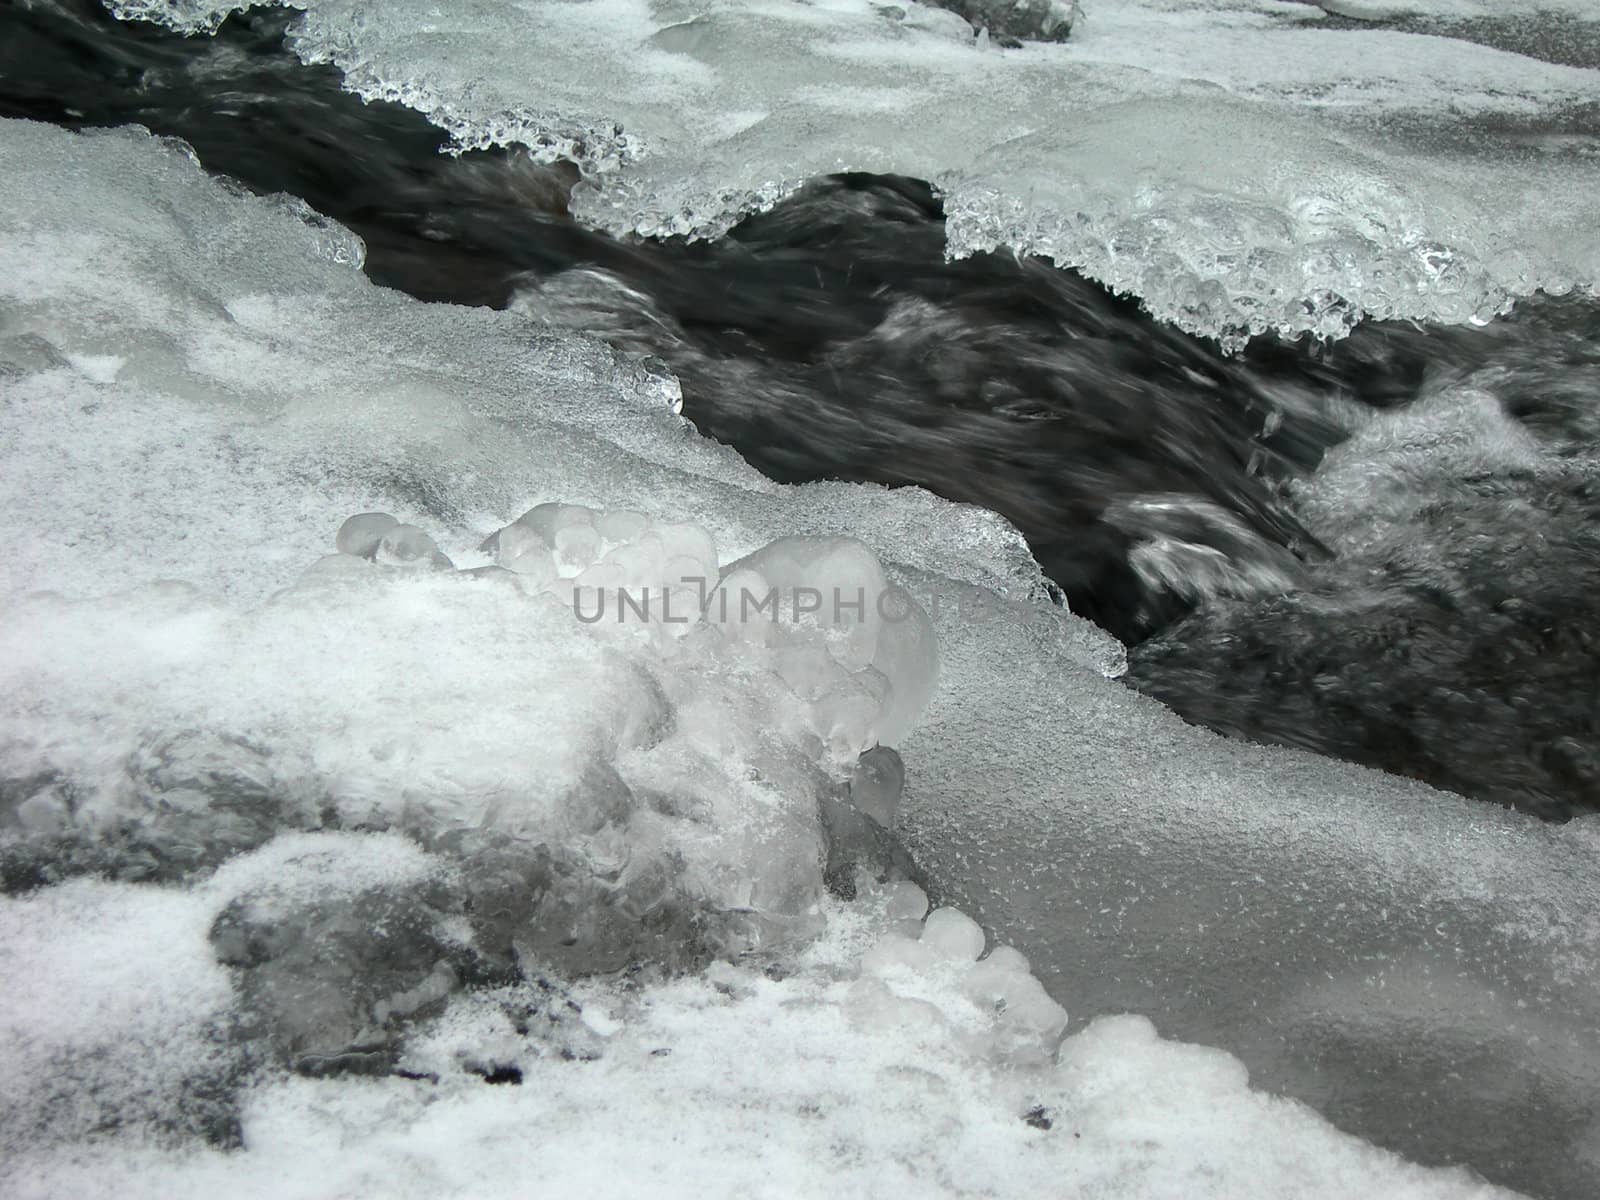 Frozen river3 by drakodav